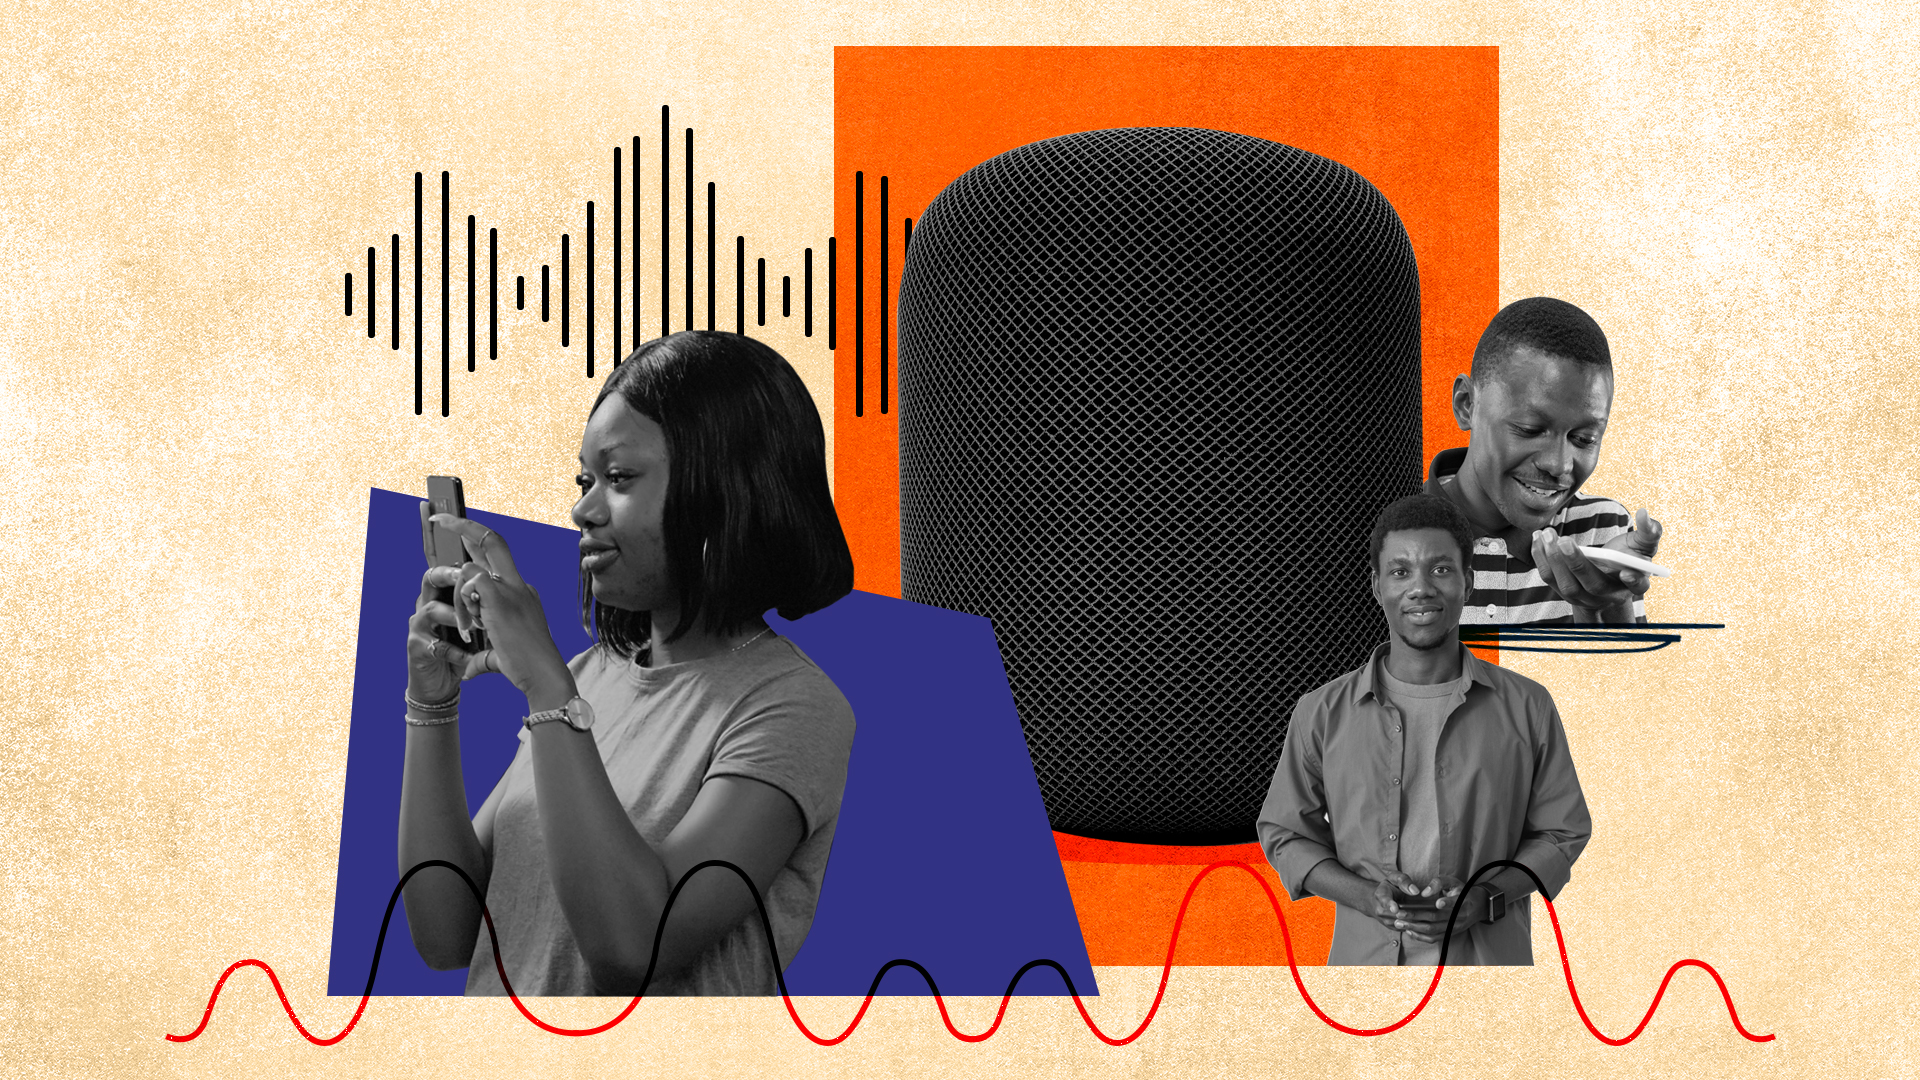 Un proyecto tecnológico propone que los asistentes de voz como Siri hablen más idiomas